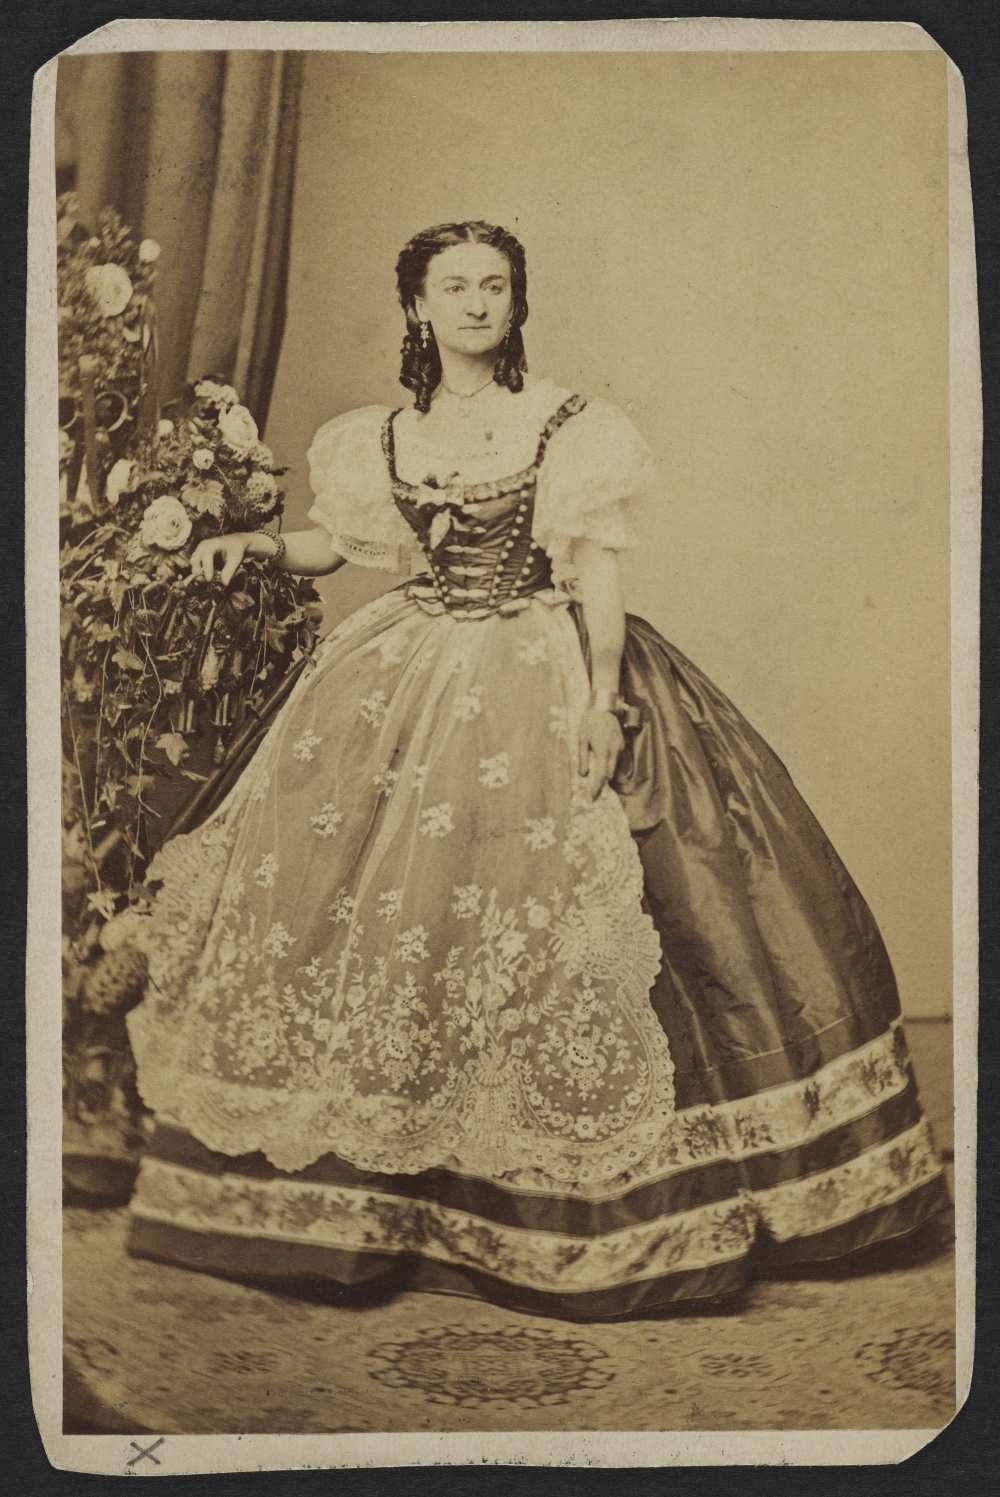 Hollósy Kornélia az 1860-as évek elején. Mayer György pesti fényképész műtermi felvétele ‒ Színháztörténeti és Zeneműtár